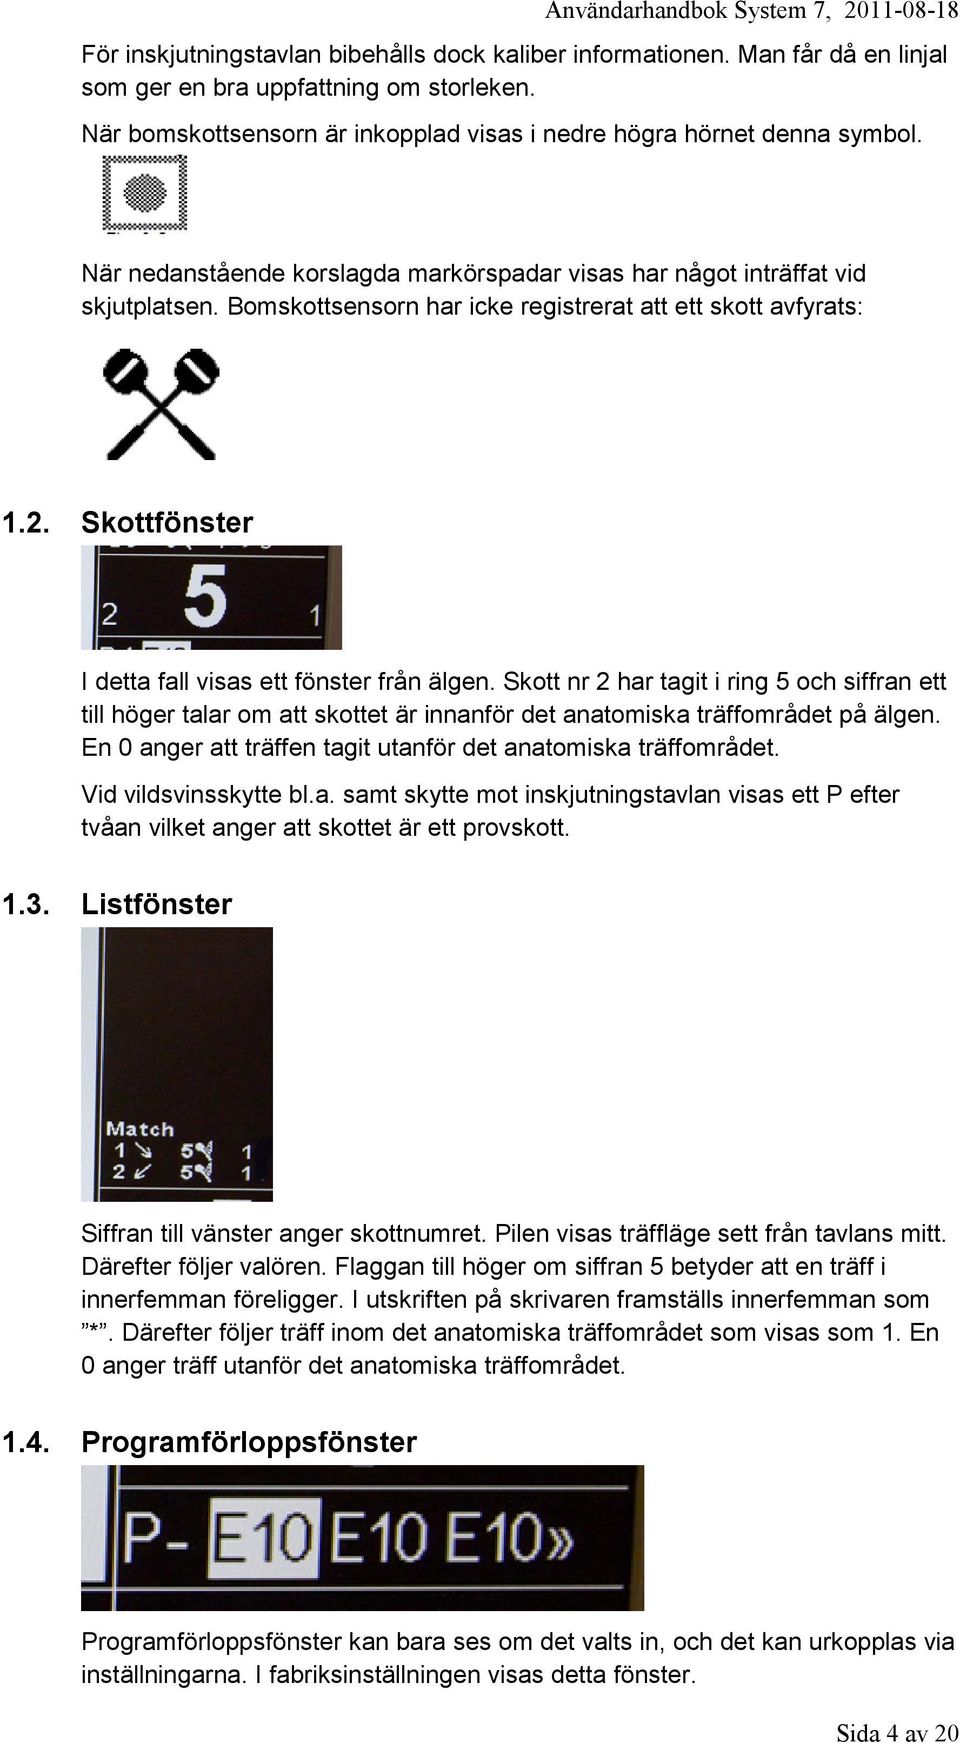 1 Teknisk specifikation. 2 Användarhandbok till kontrollenheten. 3 Bilaga  till användarhandboken. 4 Instruktion vid skjutplats - PDF Gratis  nedladdning